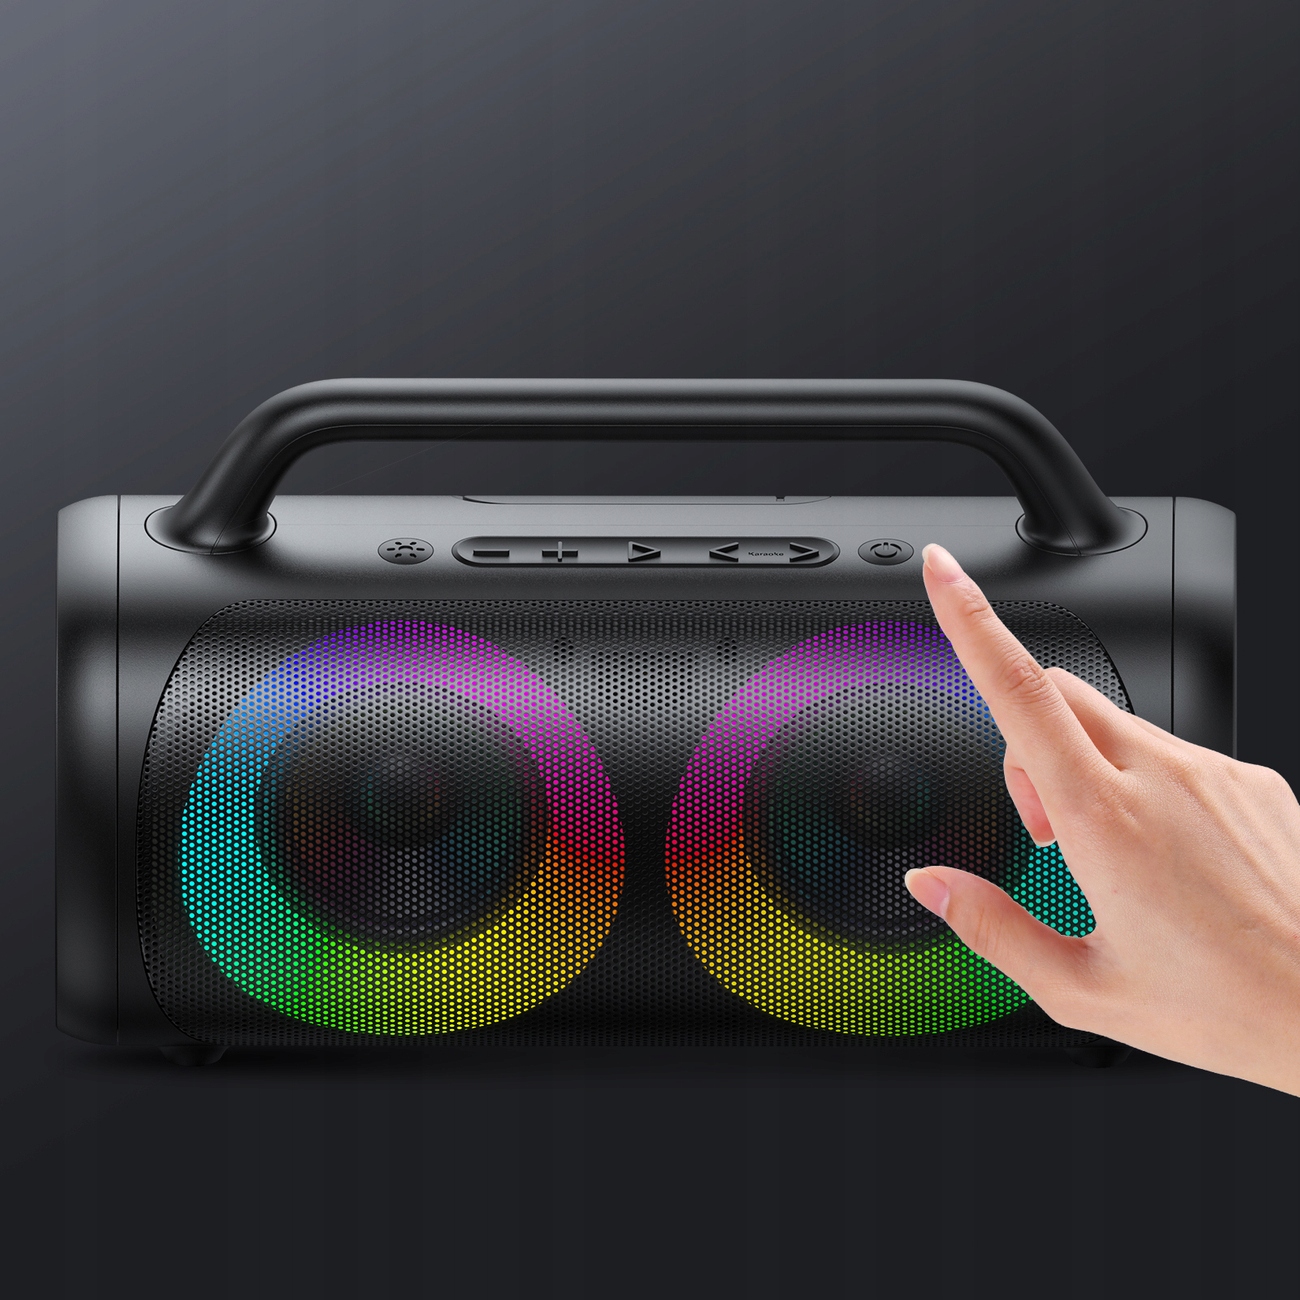 Głośnik bluetooth 5.1 z kolorowym oświetleniem LED Funkcje funkcja karaoke odbieranie połączeń odporność na zachlapanie odtwarzanie plików audio sterowanie za pomocą smartfona tryb głośnomówiący wbudowany mikrofon